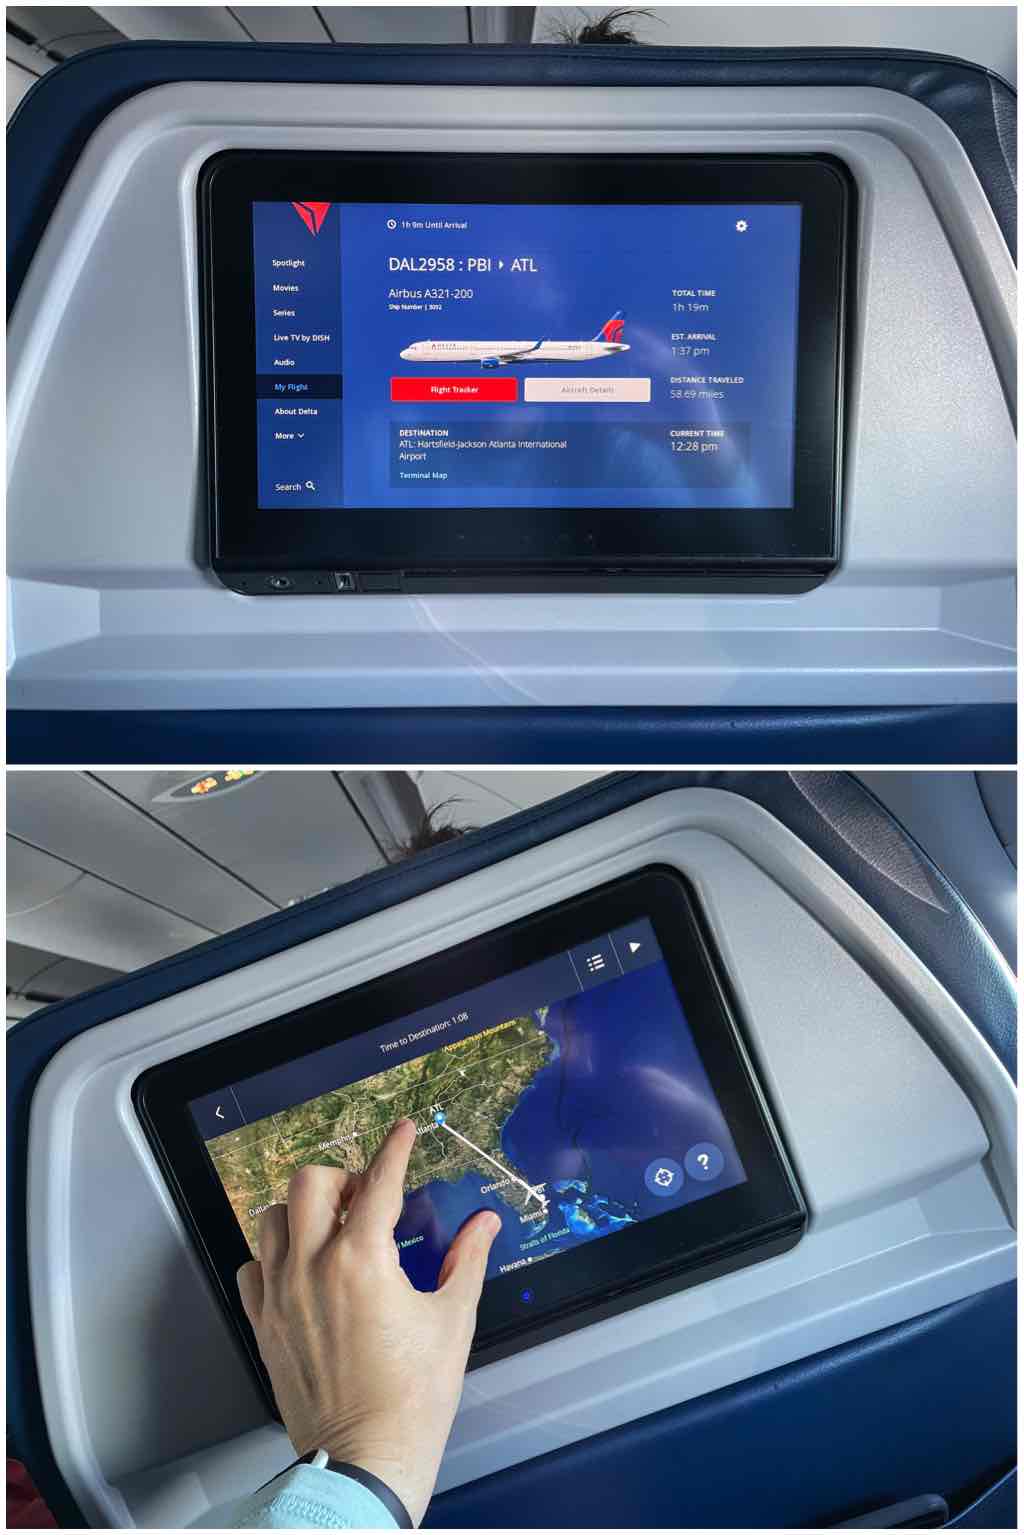 Delta A321 flight information screens